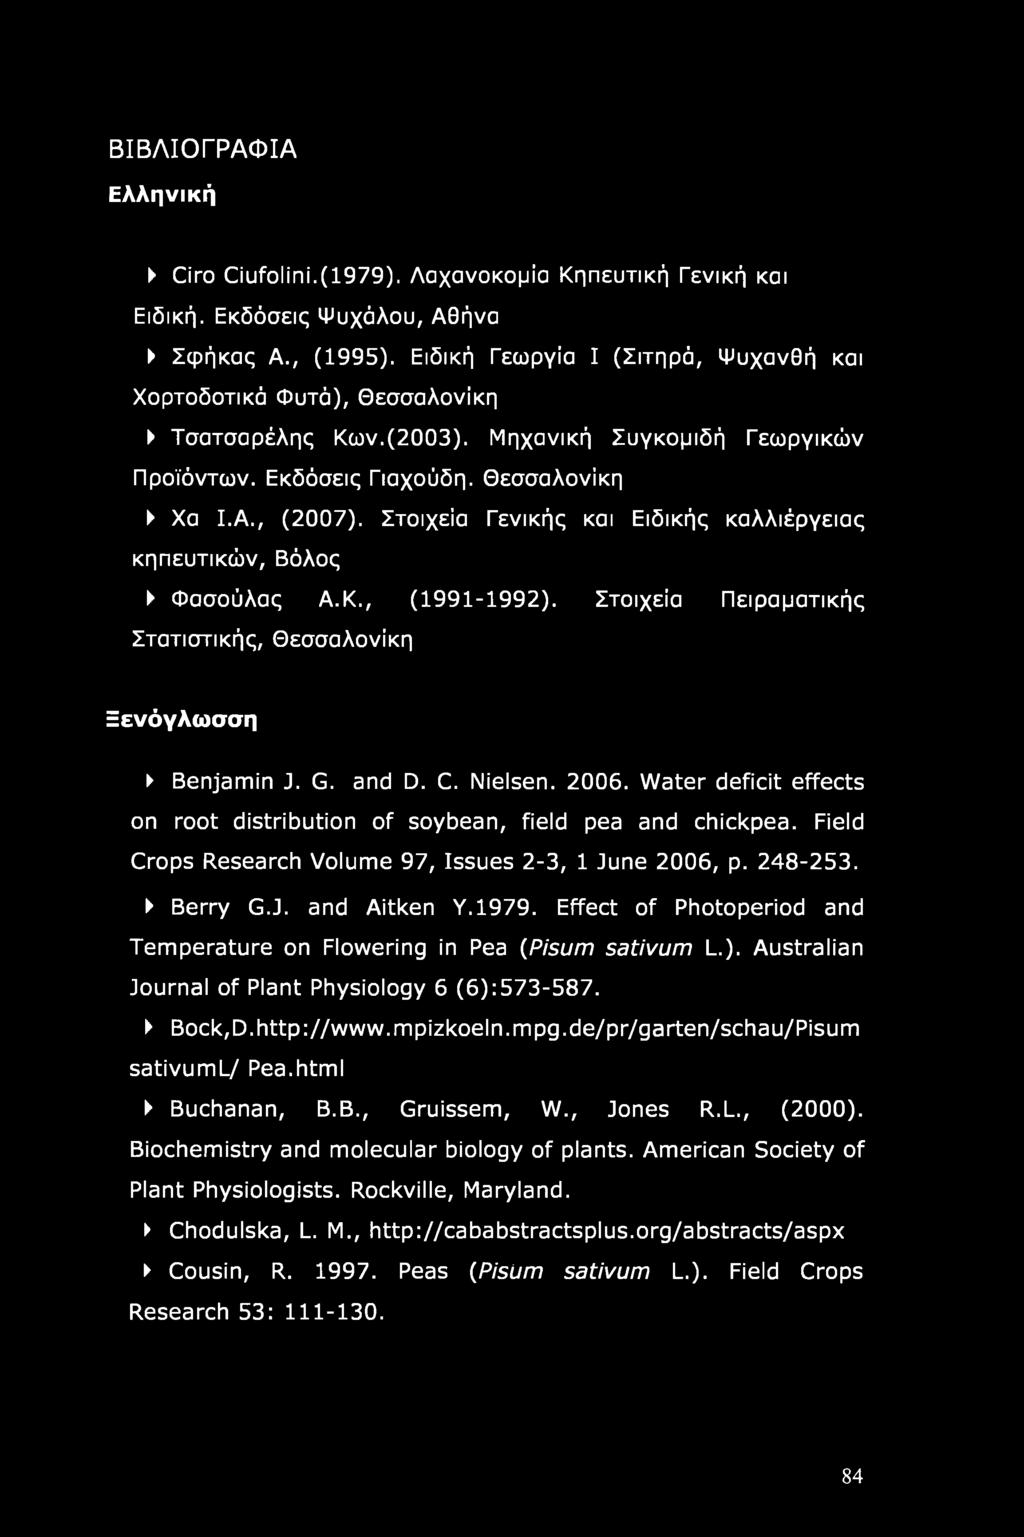 Στοιχεία Γενικής και Ειδικής καλλιέργειας κηπευτικών, Βόλος Φασούλας Α.Κ., (1991-1992). Στοιχεία Πειραματικής Στατιστικής, Θεσσαλονίκη Ξενόγλωσση Benjamin J. G. and D. C. Nielsen. 2006.